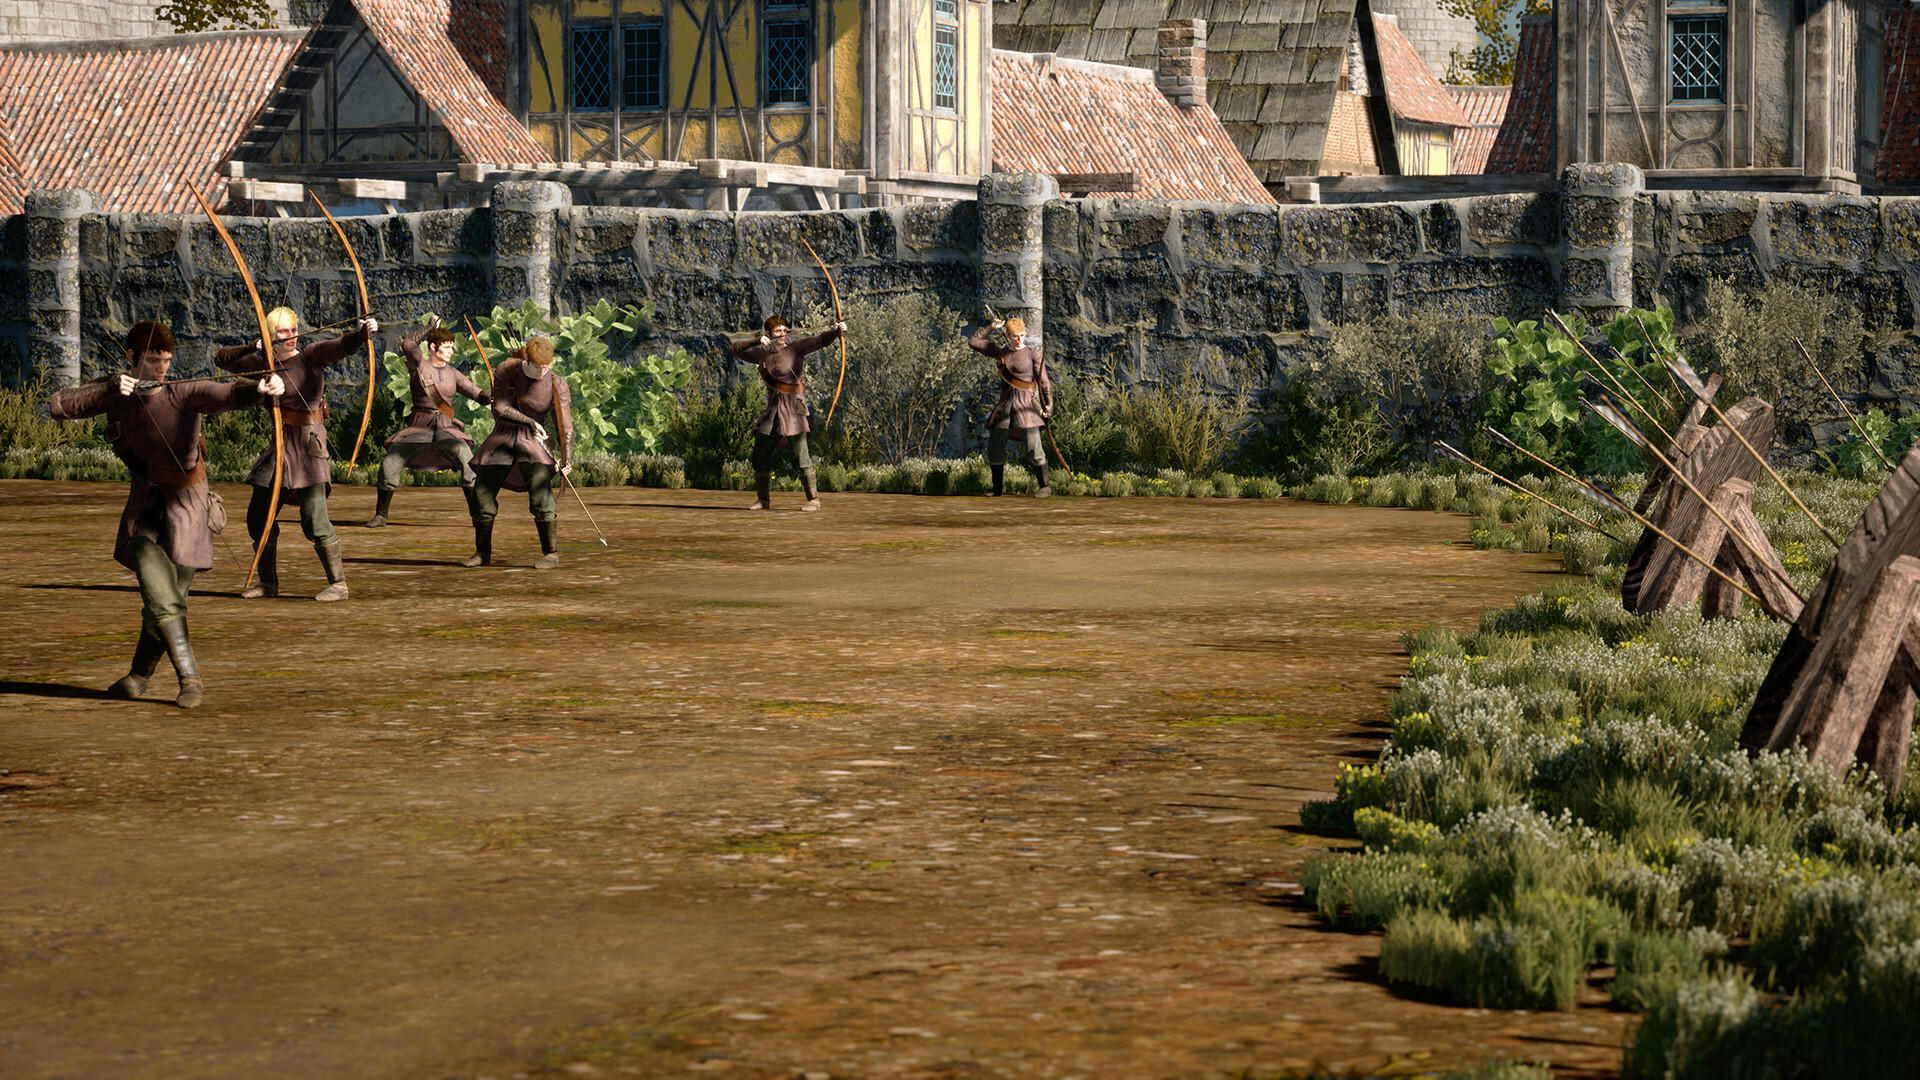 Screenshot of Noble's Life: Kingdom Reborn - Prologue